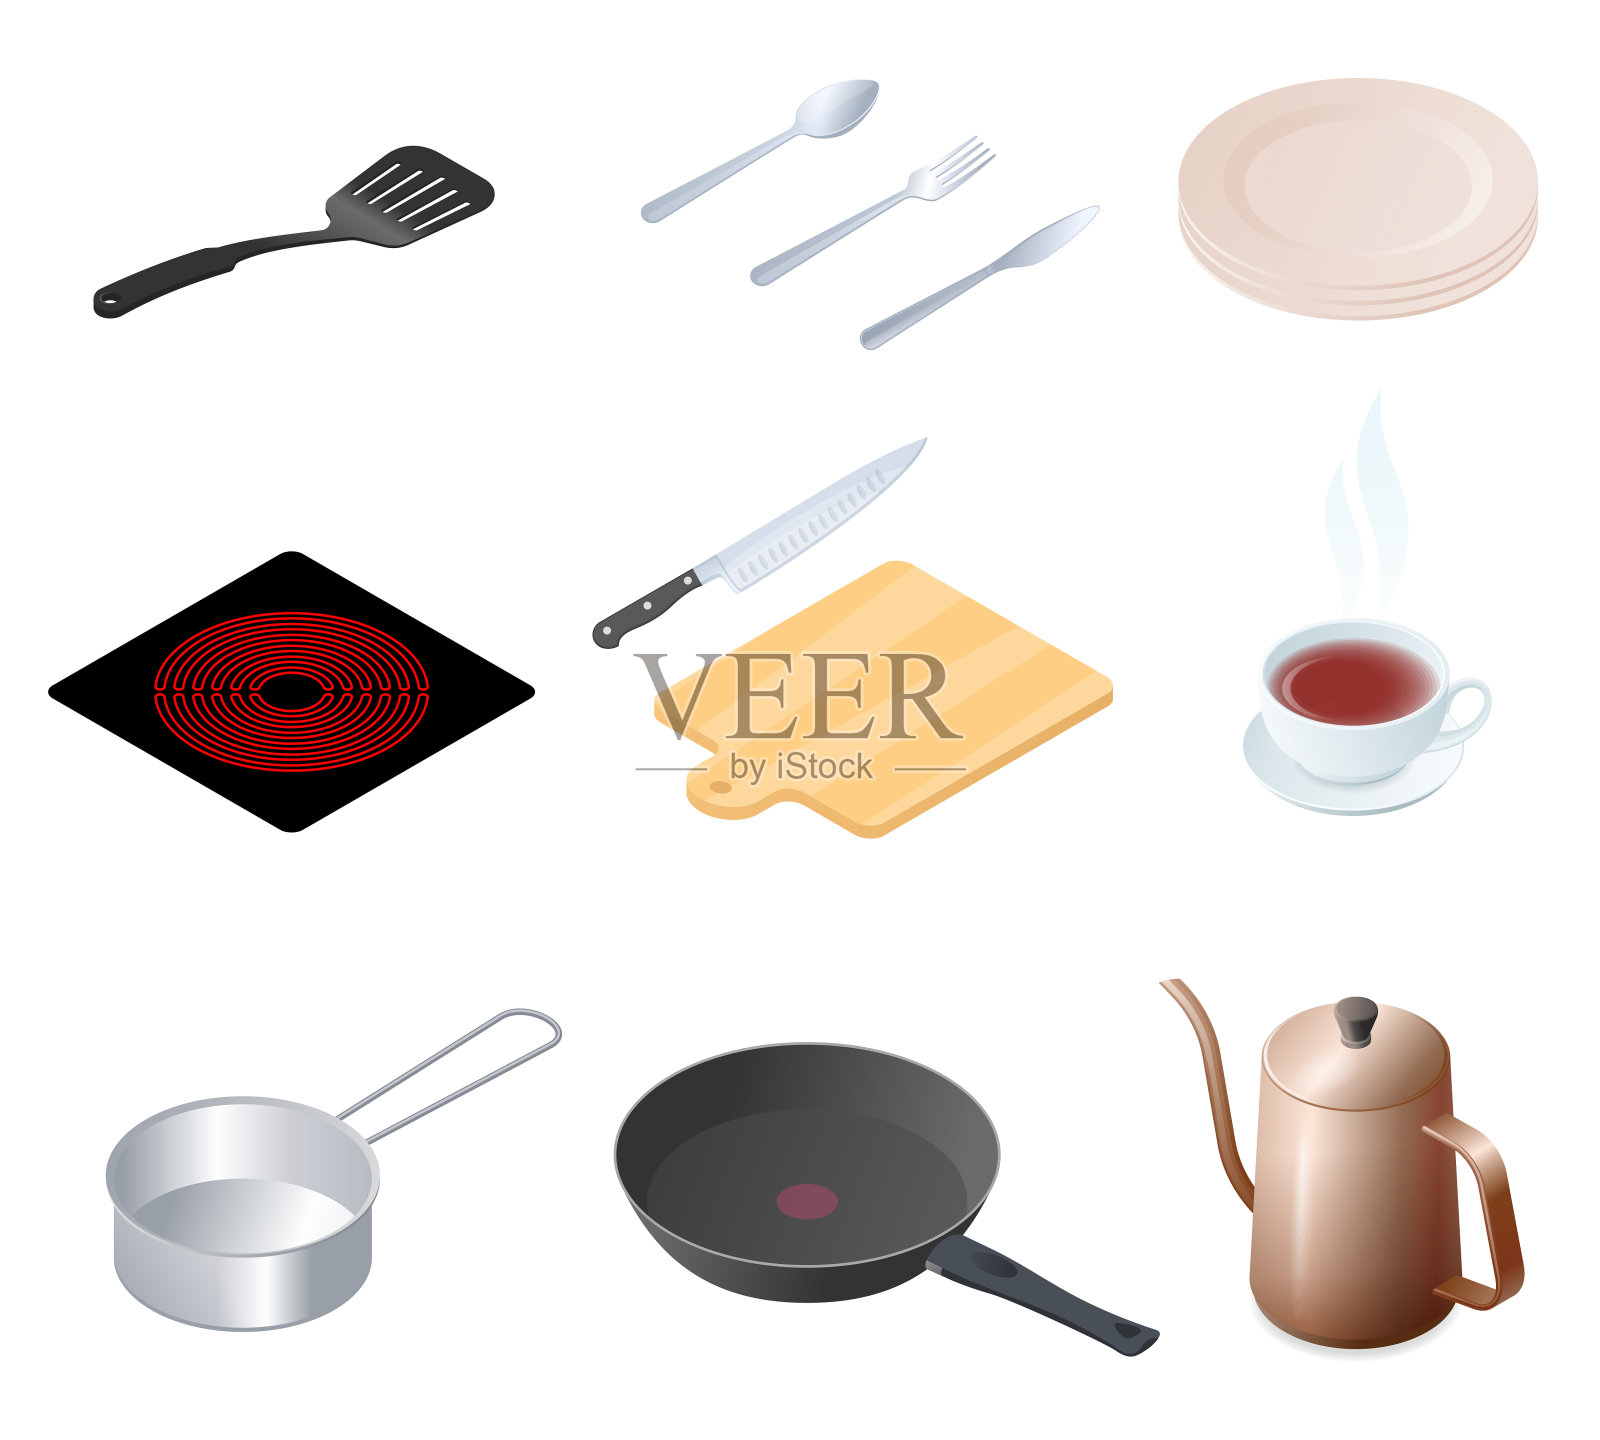 平面等距图厨房用具，厨房用具，炊具套装1。插画图片素材